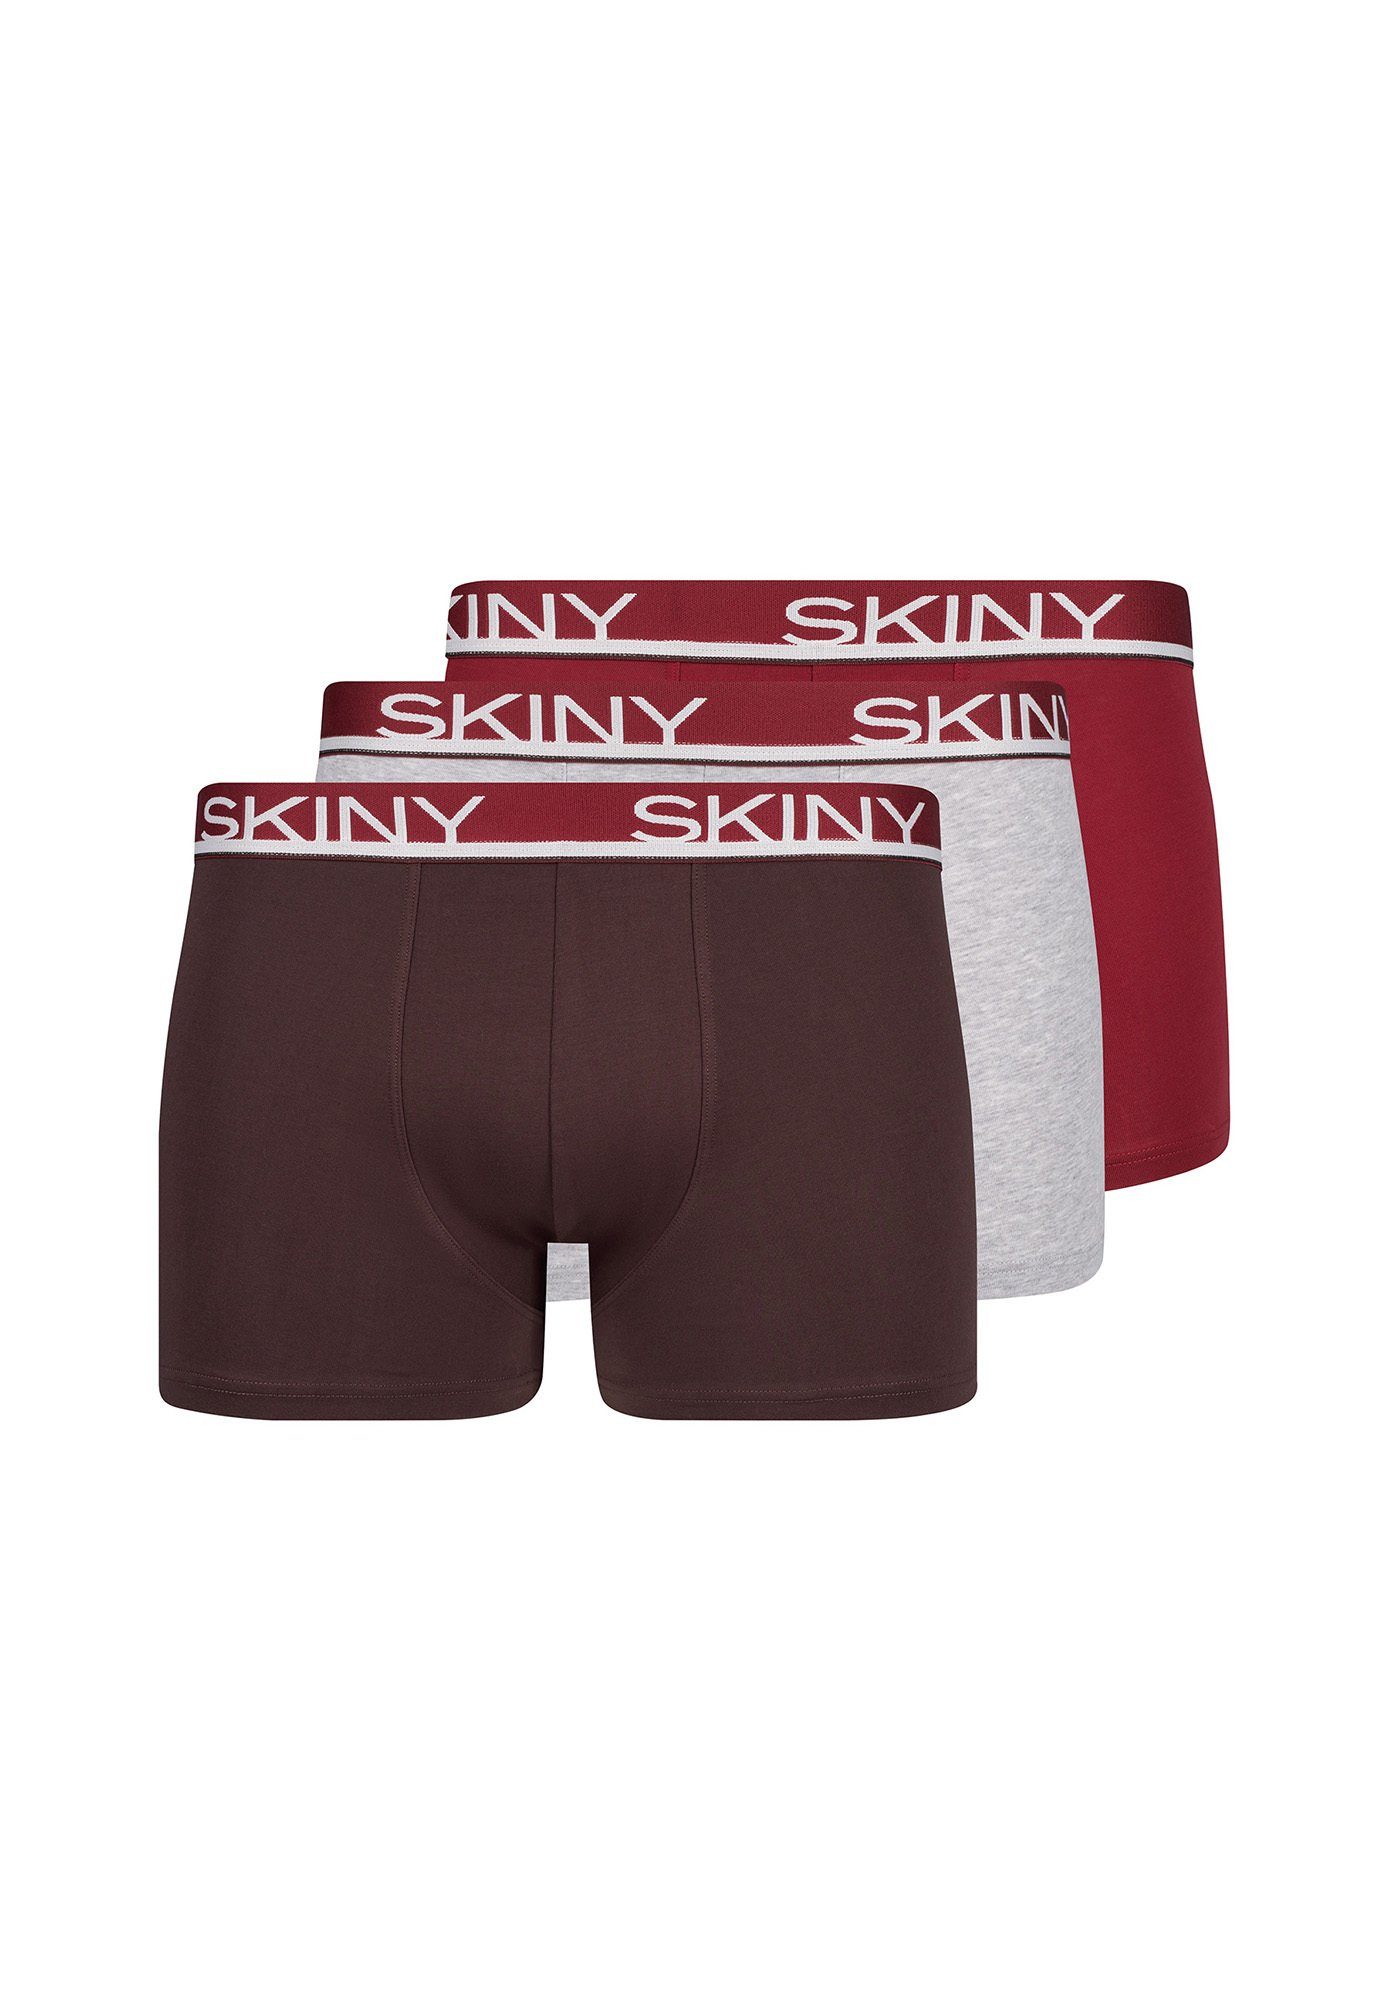 Skiny Boxer Herren Boxer Shorts 3er Pack - Trunks, Pants Bordeaux/Hellgrau/Rot